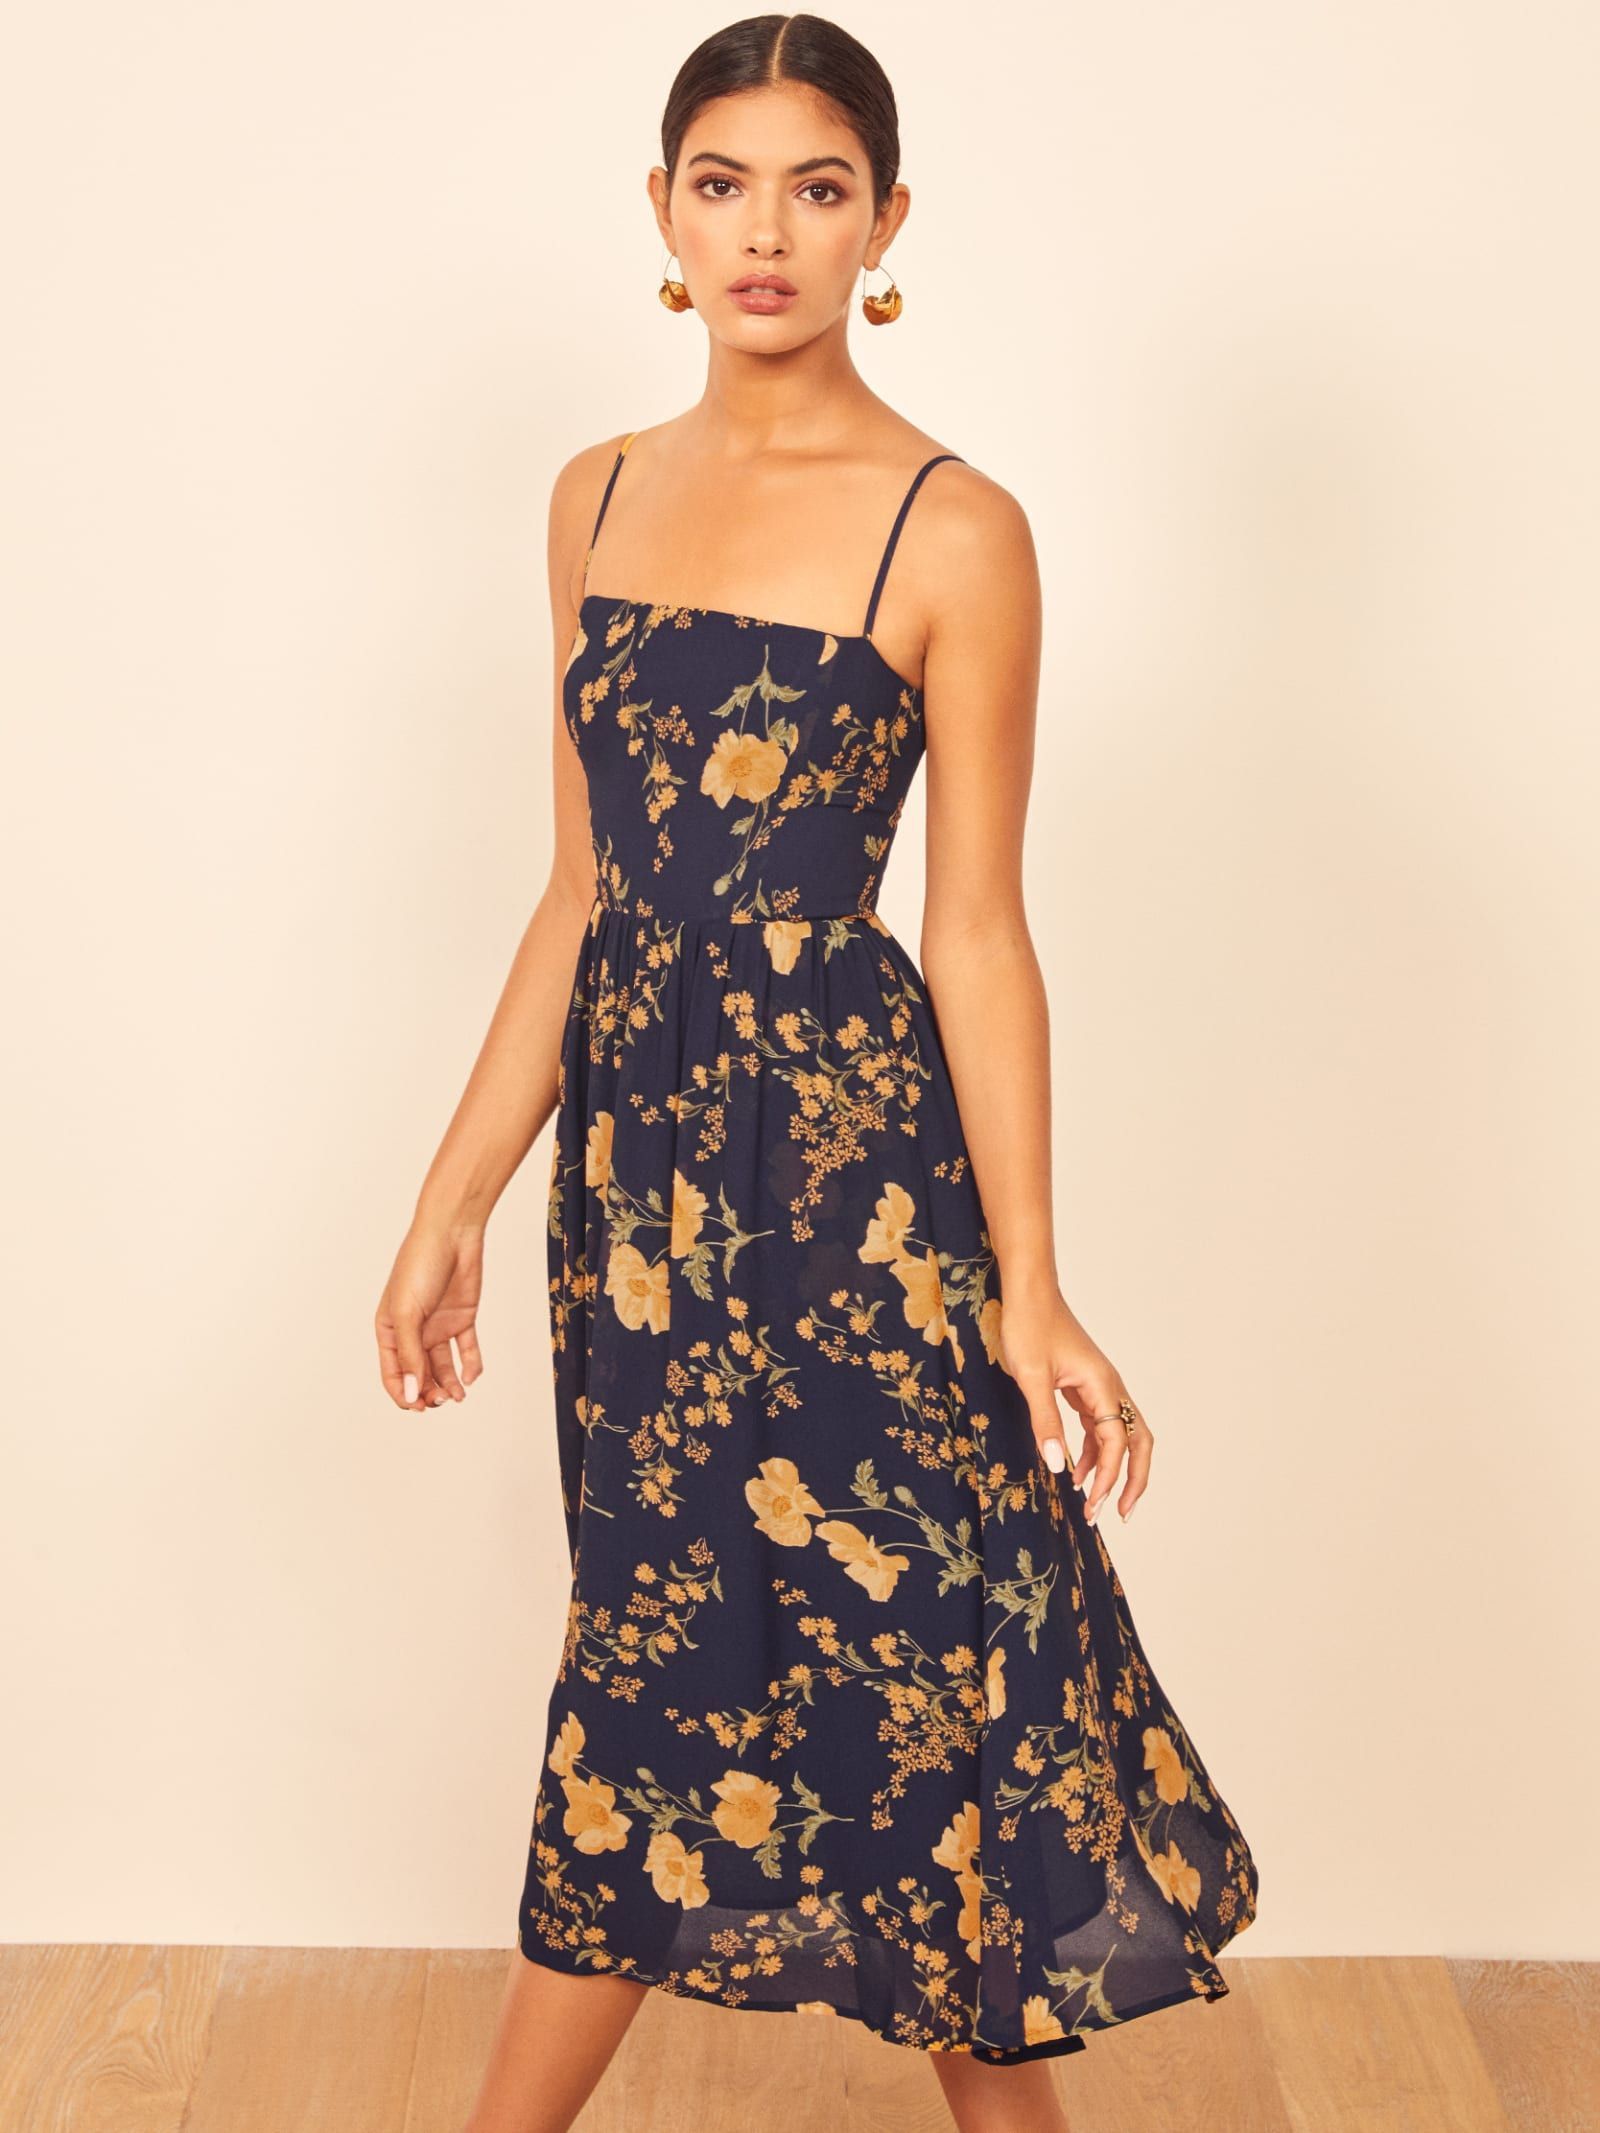 Rosehip Dress - Rosehip Dress -   18 style Dress summer ideas